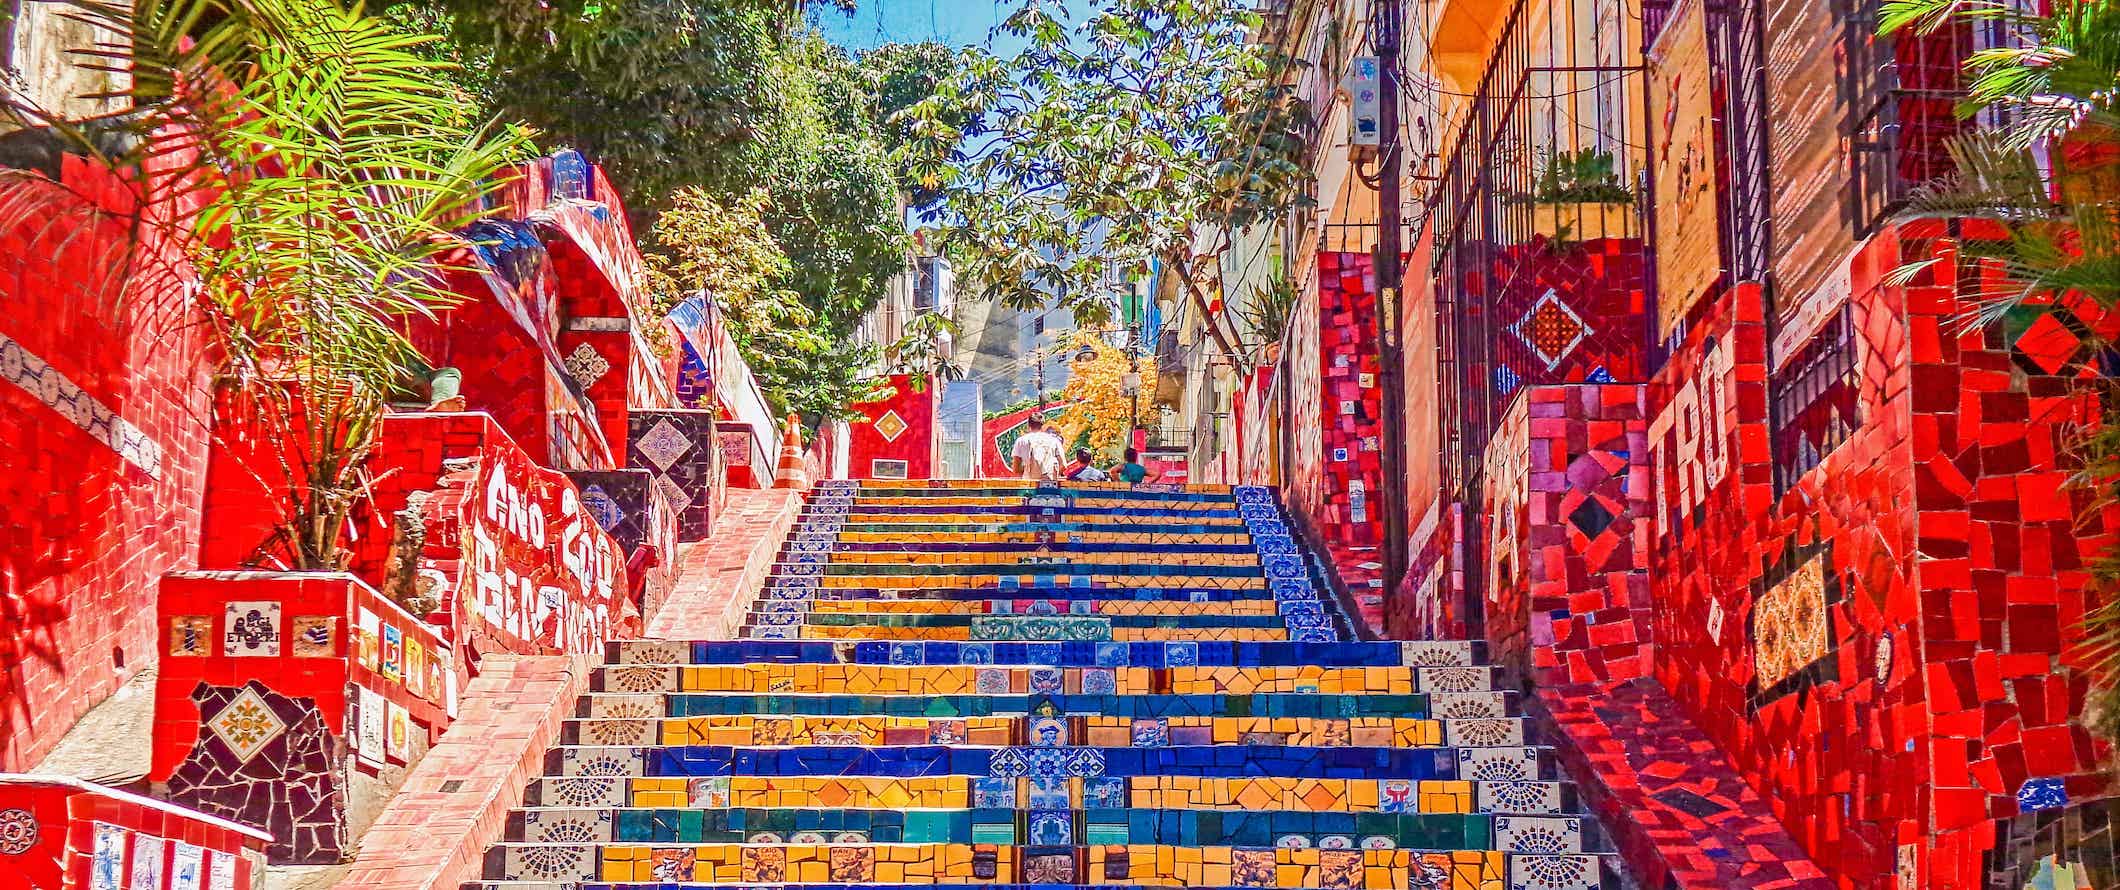 Escadaria forrada com mosaicos coloridos no Rio de Janeiro, Brasil